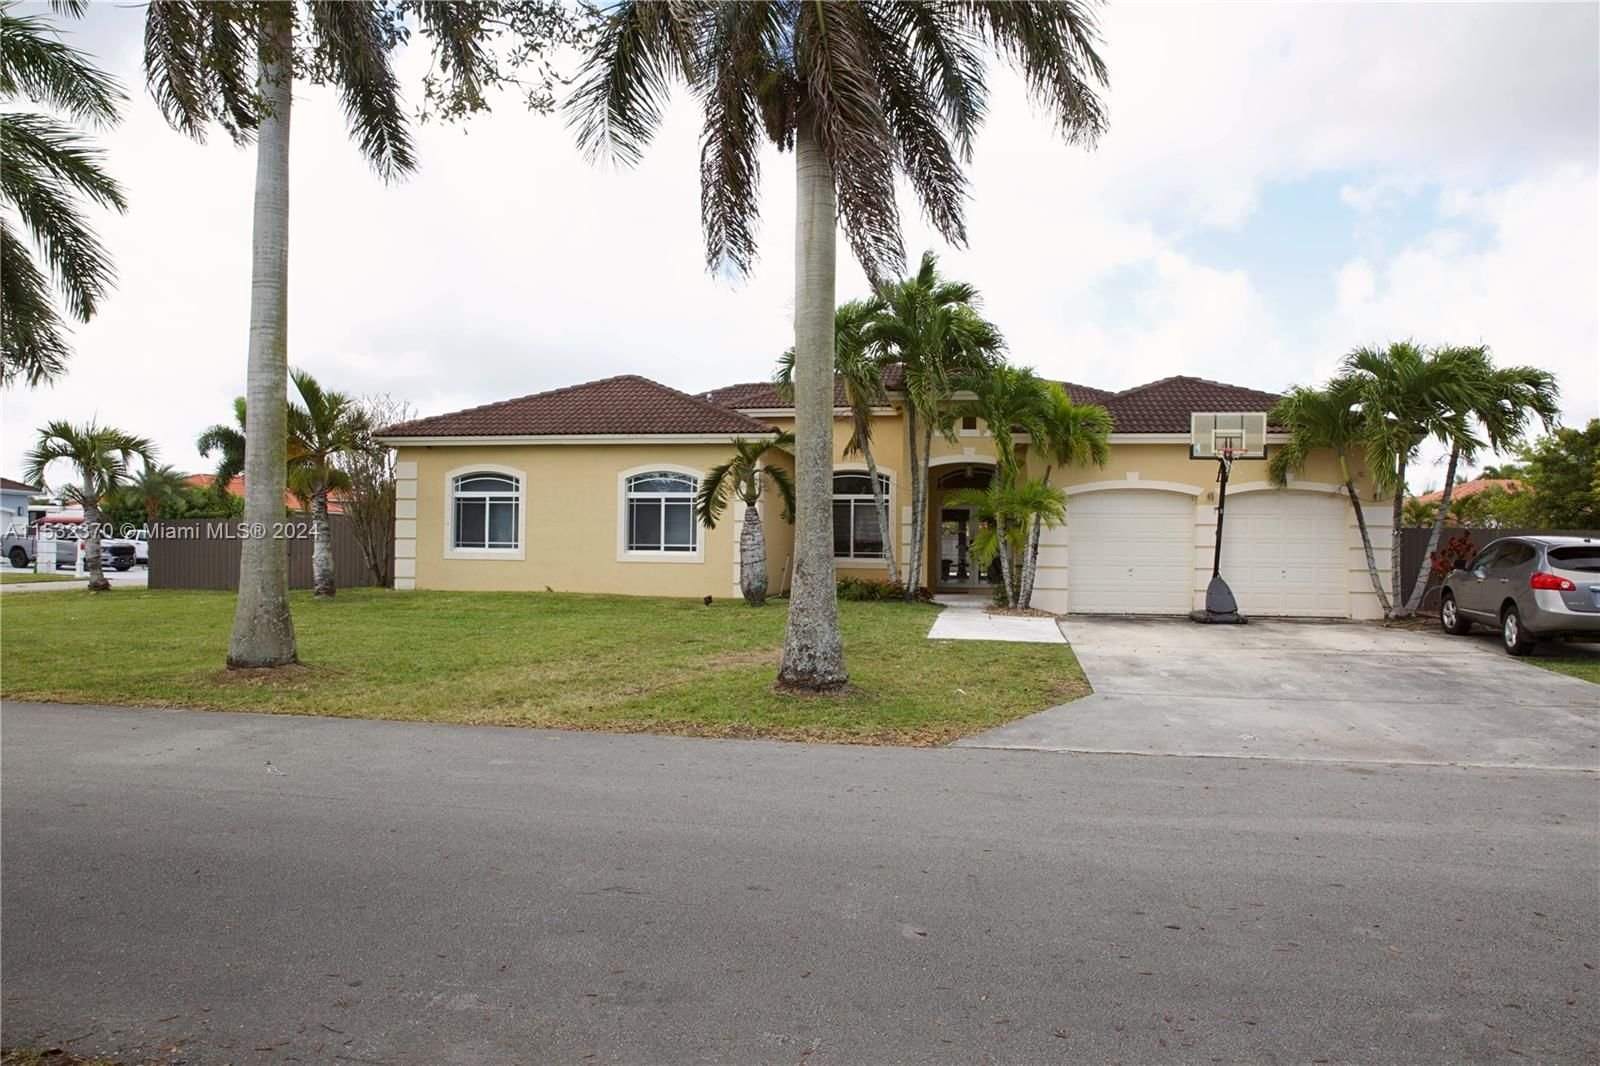 Real estate property located at 21332 129th Ct, Miami-Dade County, OAK SOUTH ESTATES, Miami, FL